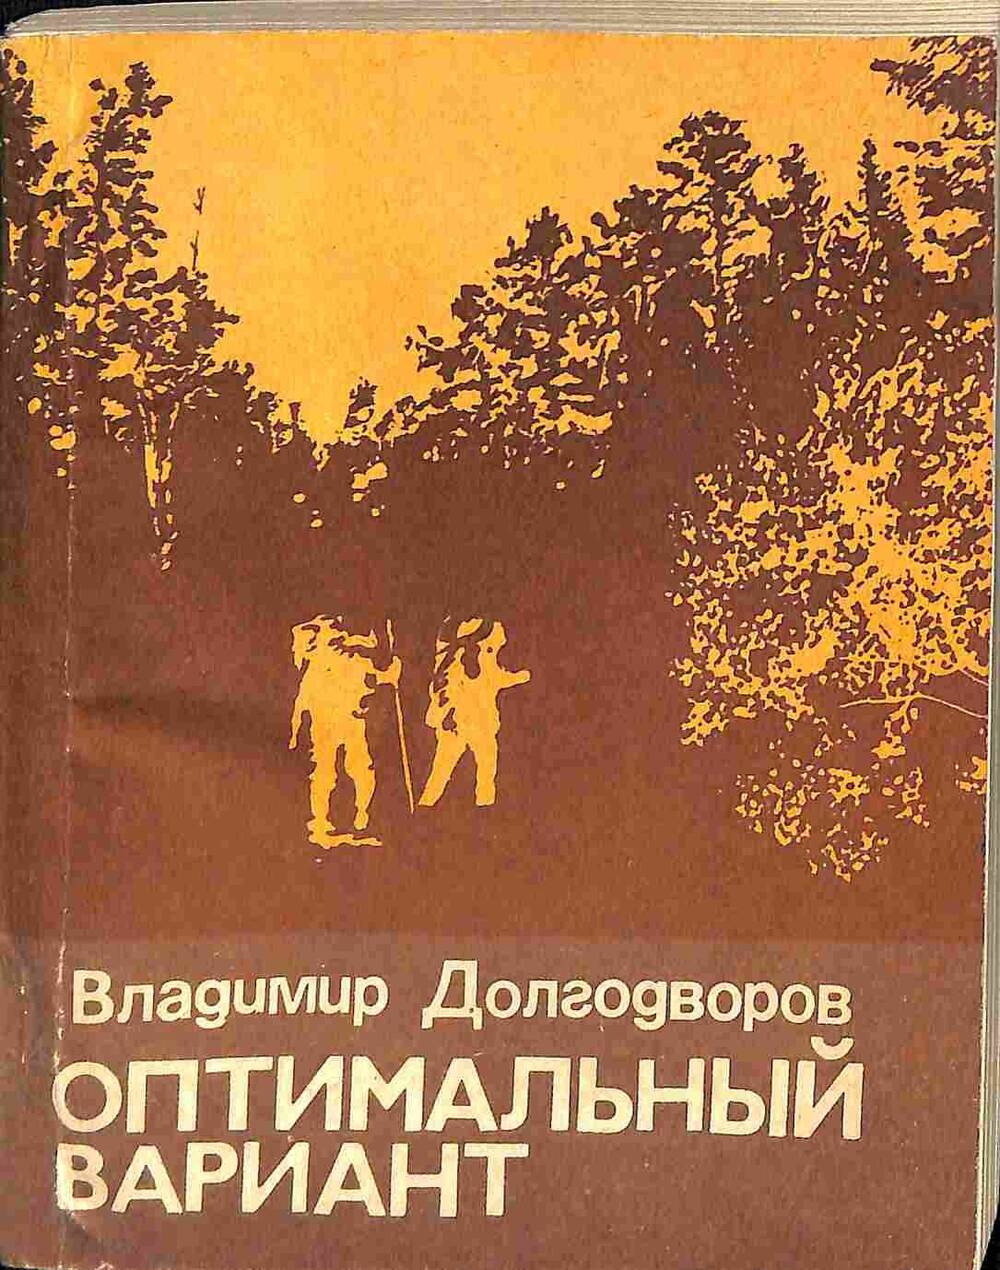 Книга. В.Долгодворов. Оптимальный вариант. Хабаровск. 1983 год